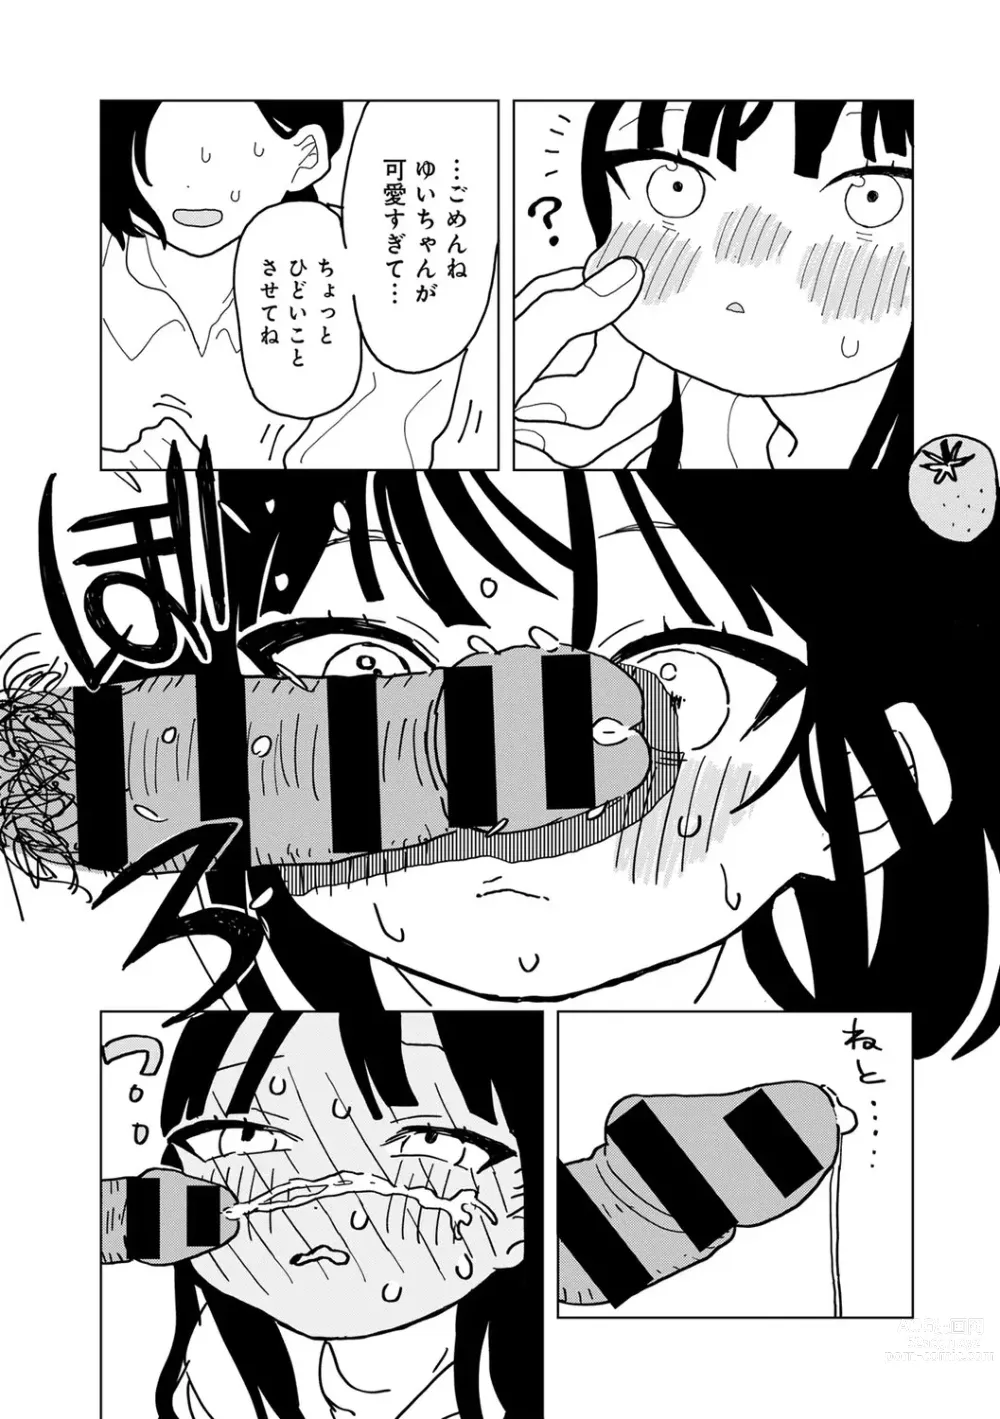 Page 181 of manga COMIC kisshug vol.3